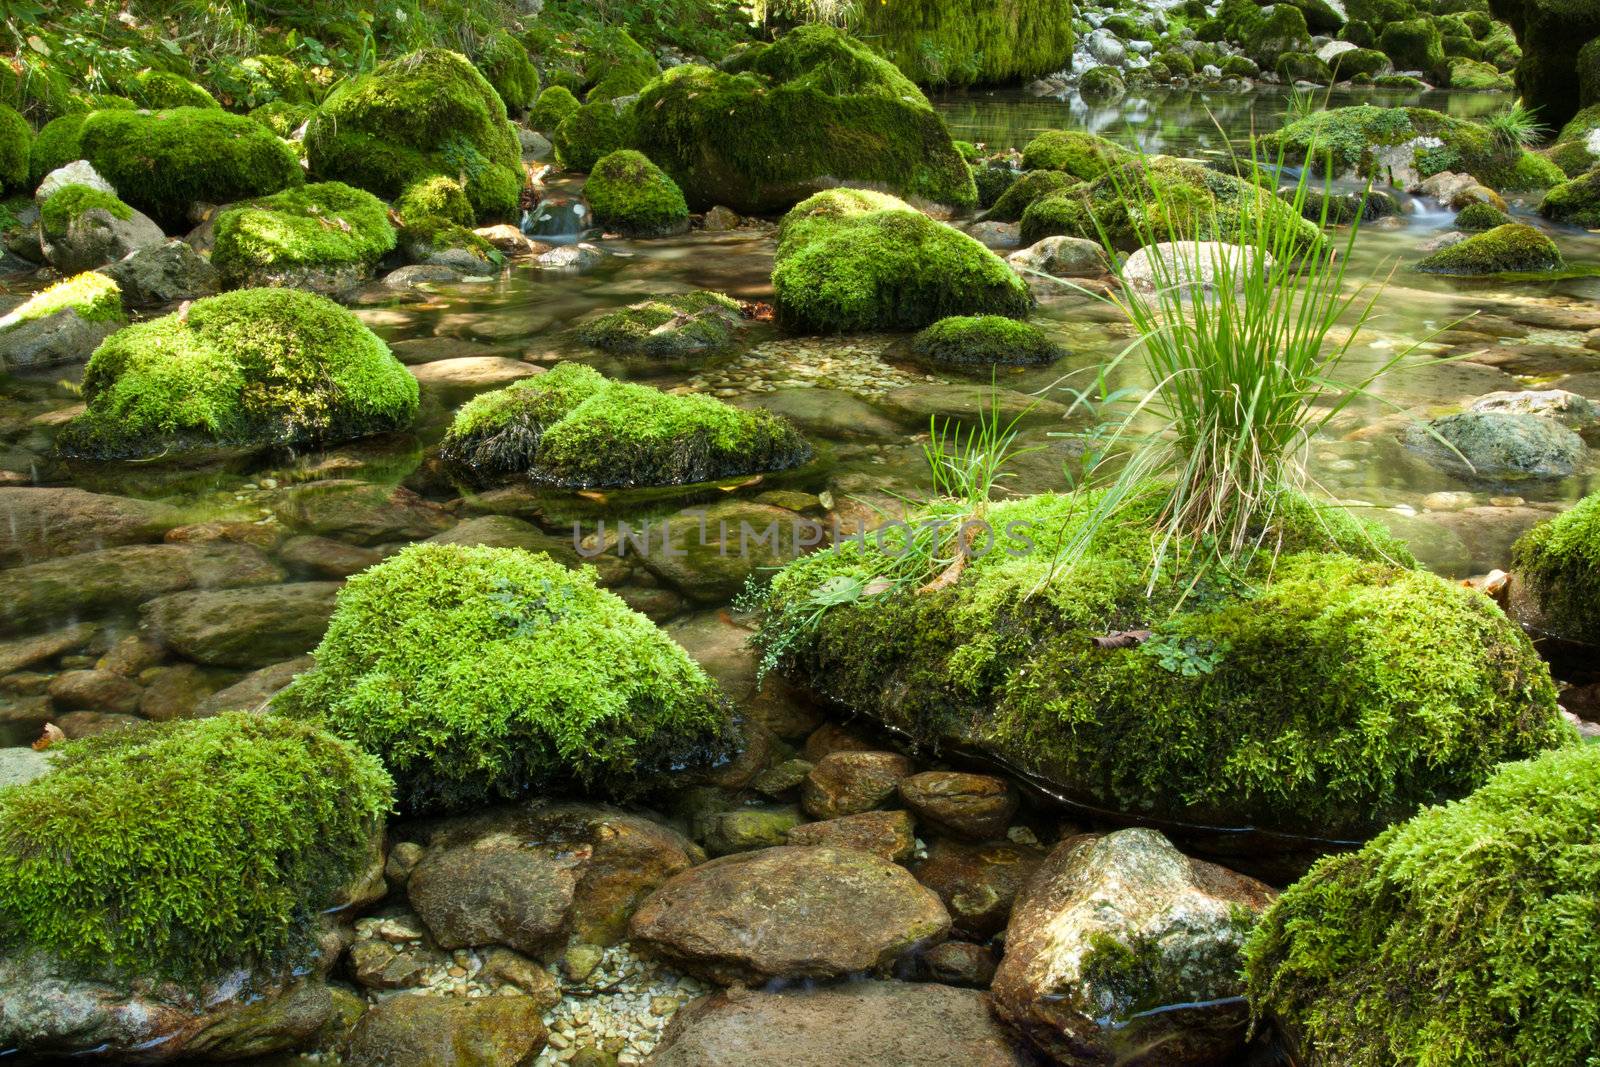 Rocks with moss by camerziga